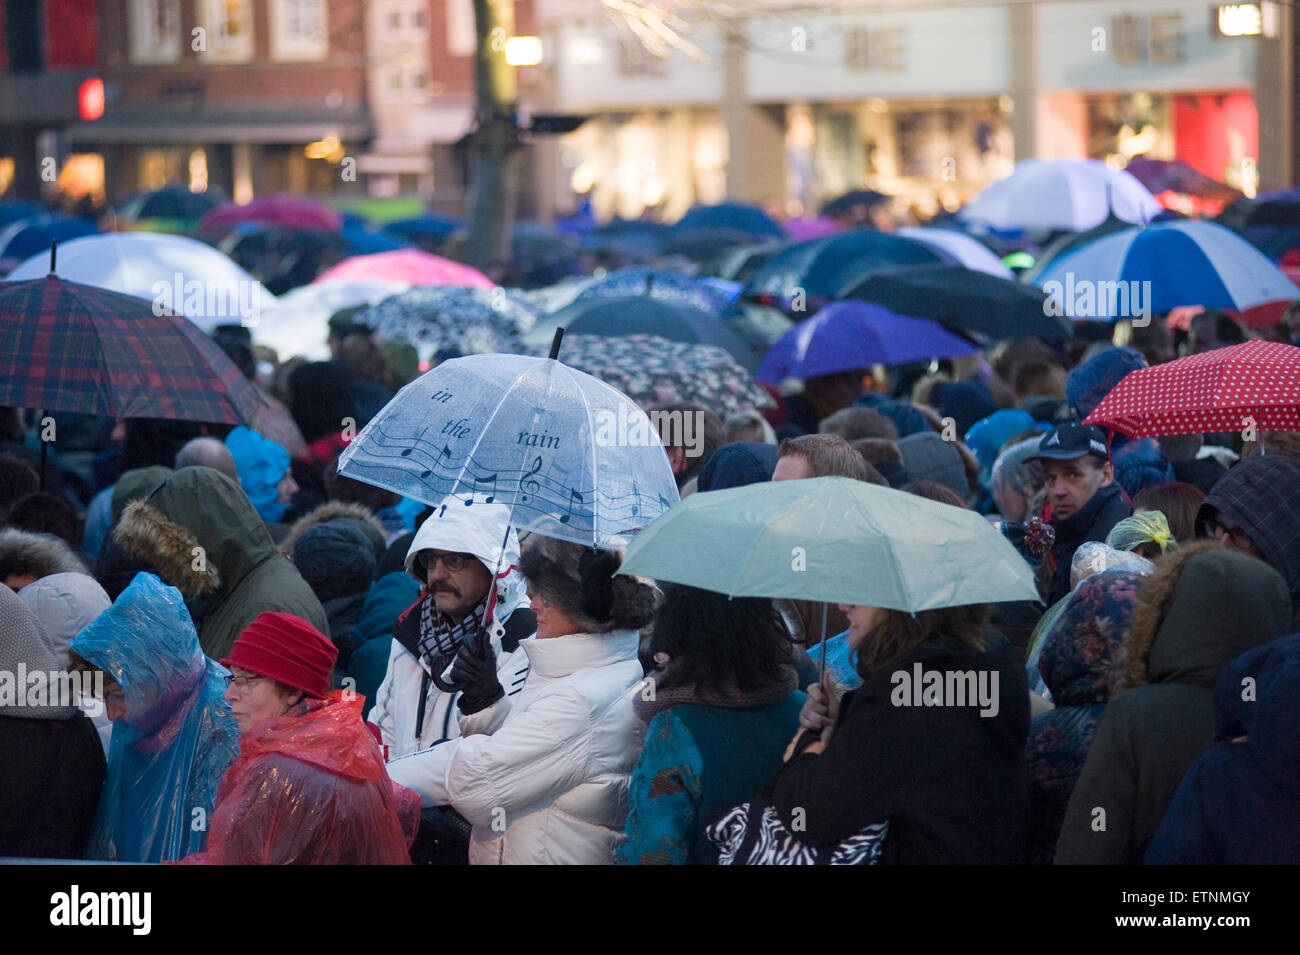 ENSCHEDE, Niederlande - 2. April 2015: Menschen mit des Regenschirmes warten im Regen an einem kalten und regnerischen Tag im Frühling Stockfoto